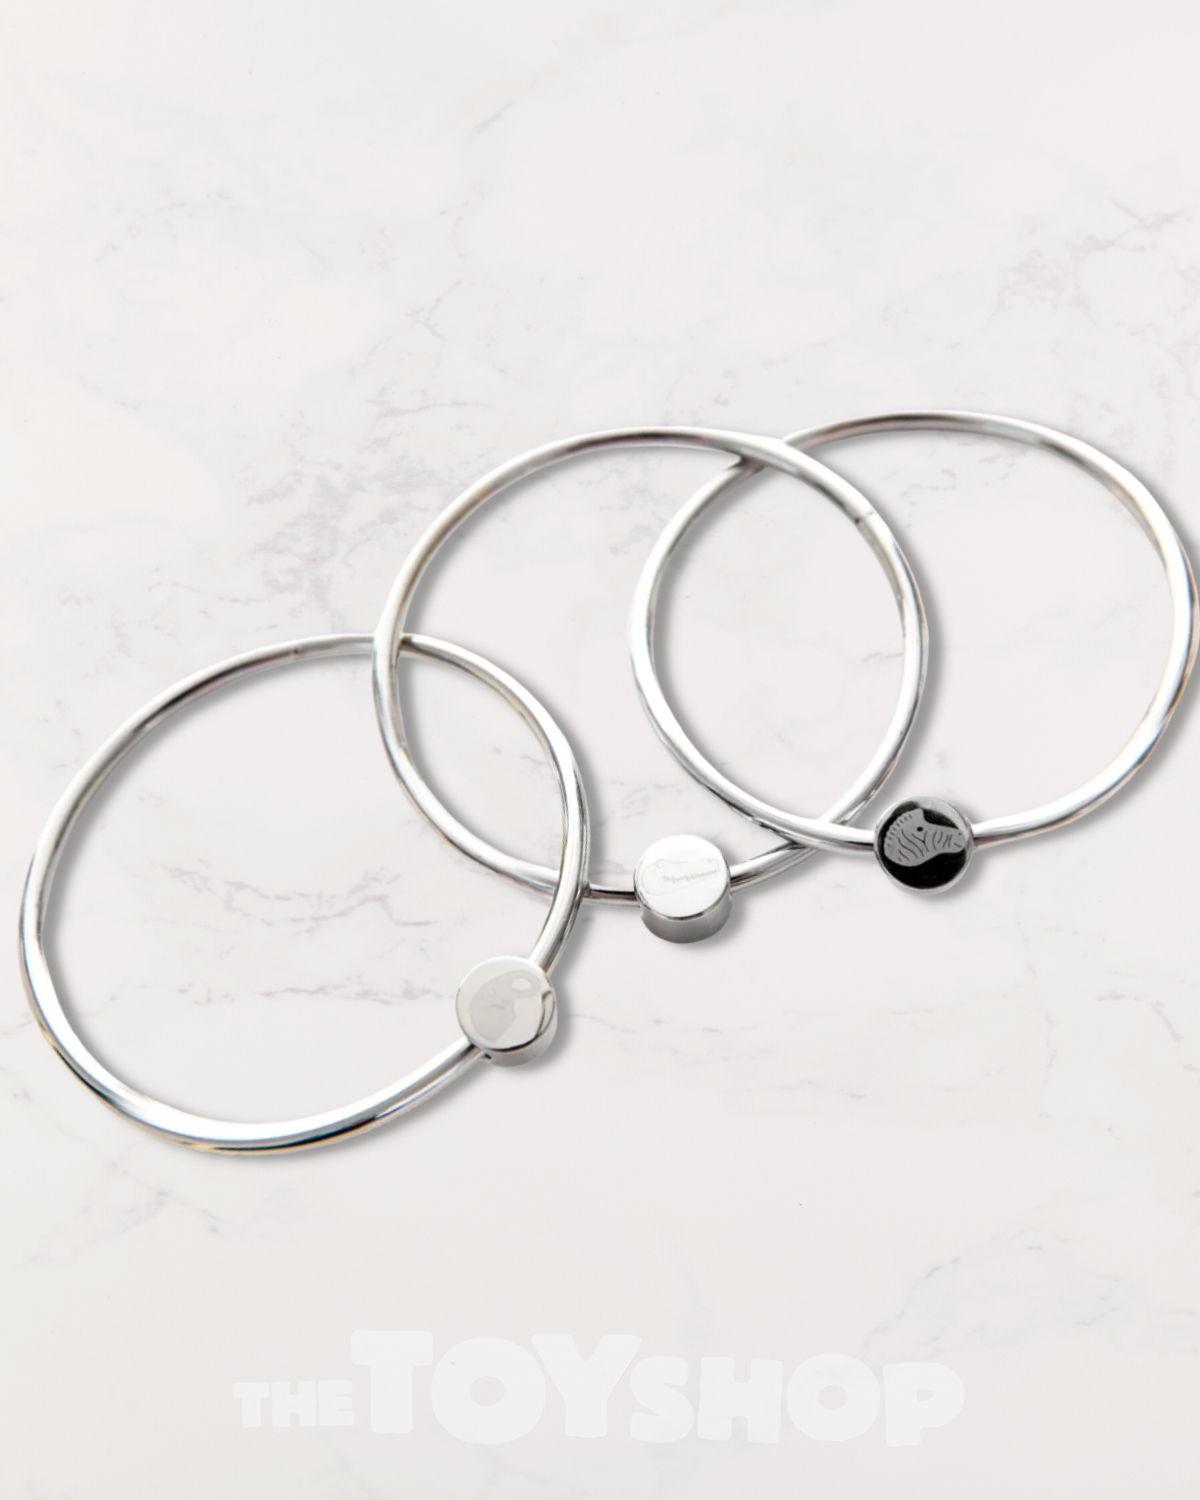 3 interlocked stainless steel rings.